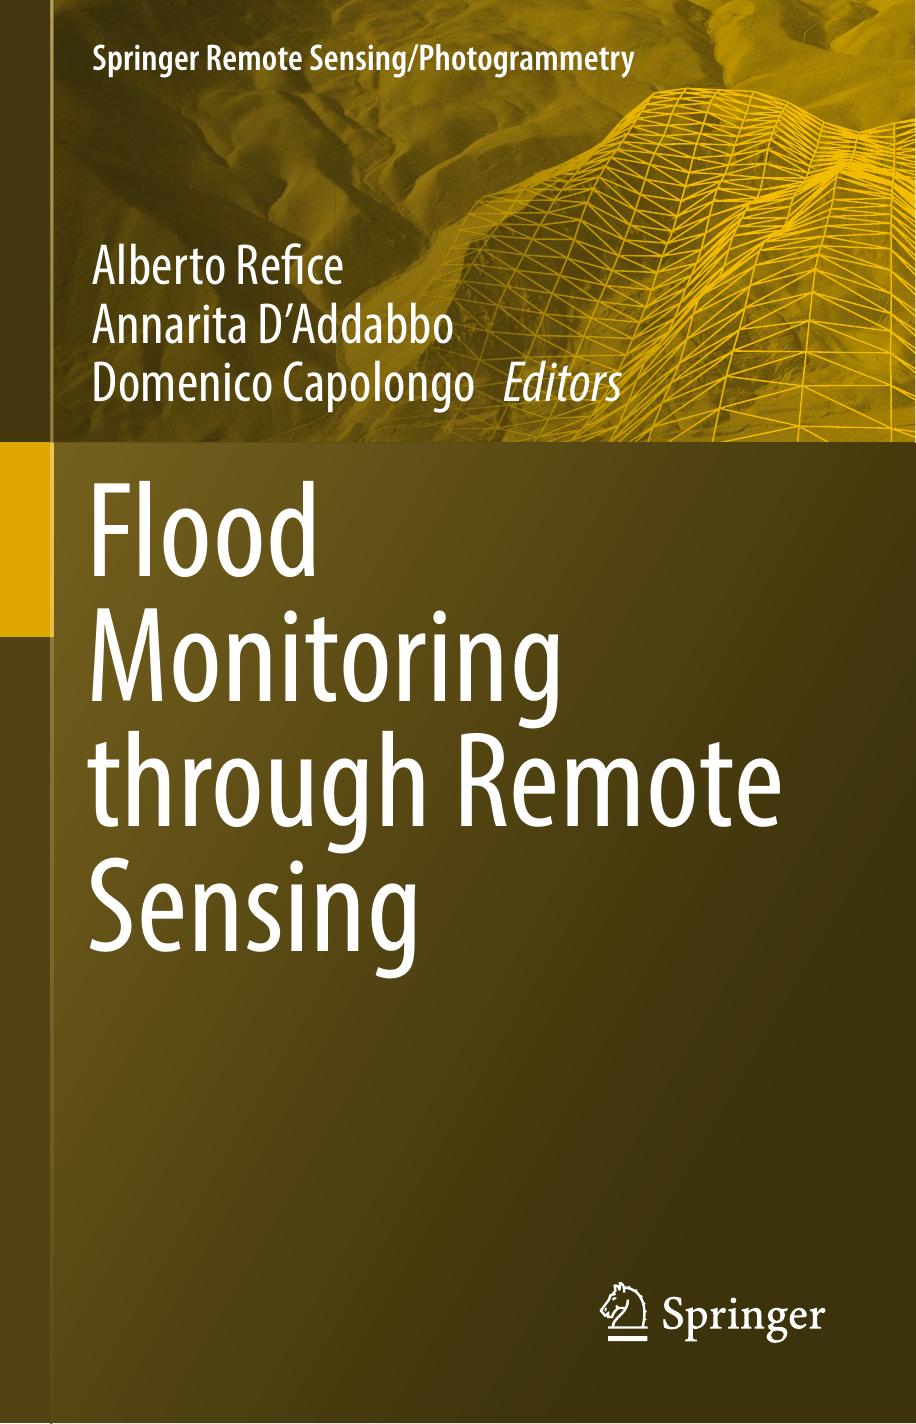 Flood Monitoring through Remote Sensing-Springer International Publishing (2018)